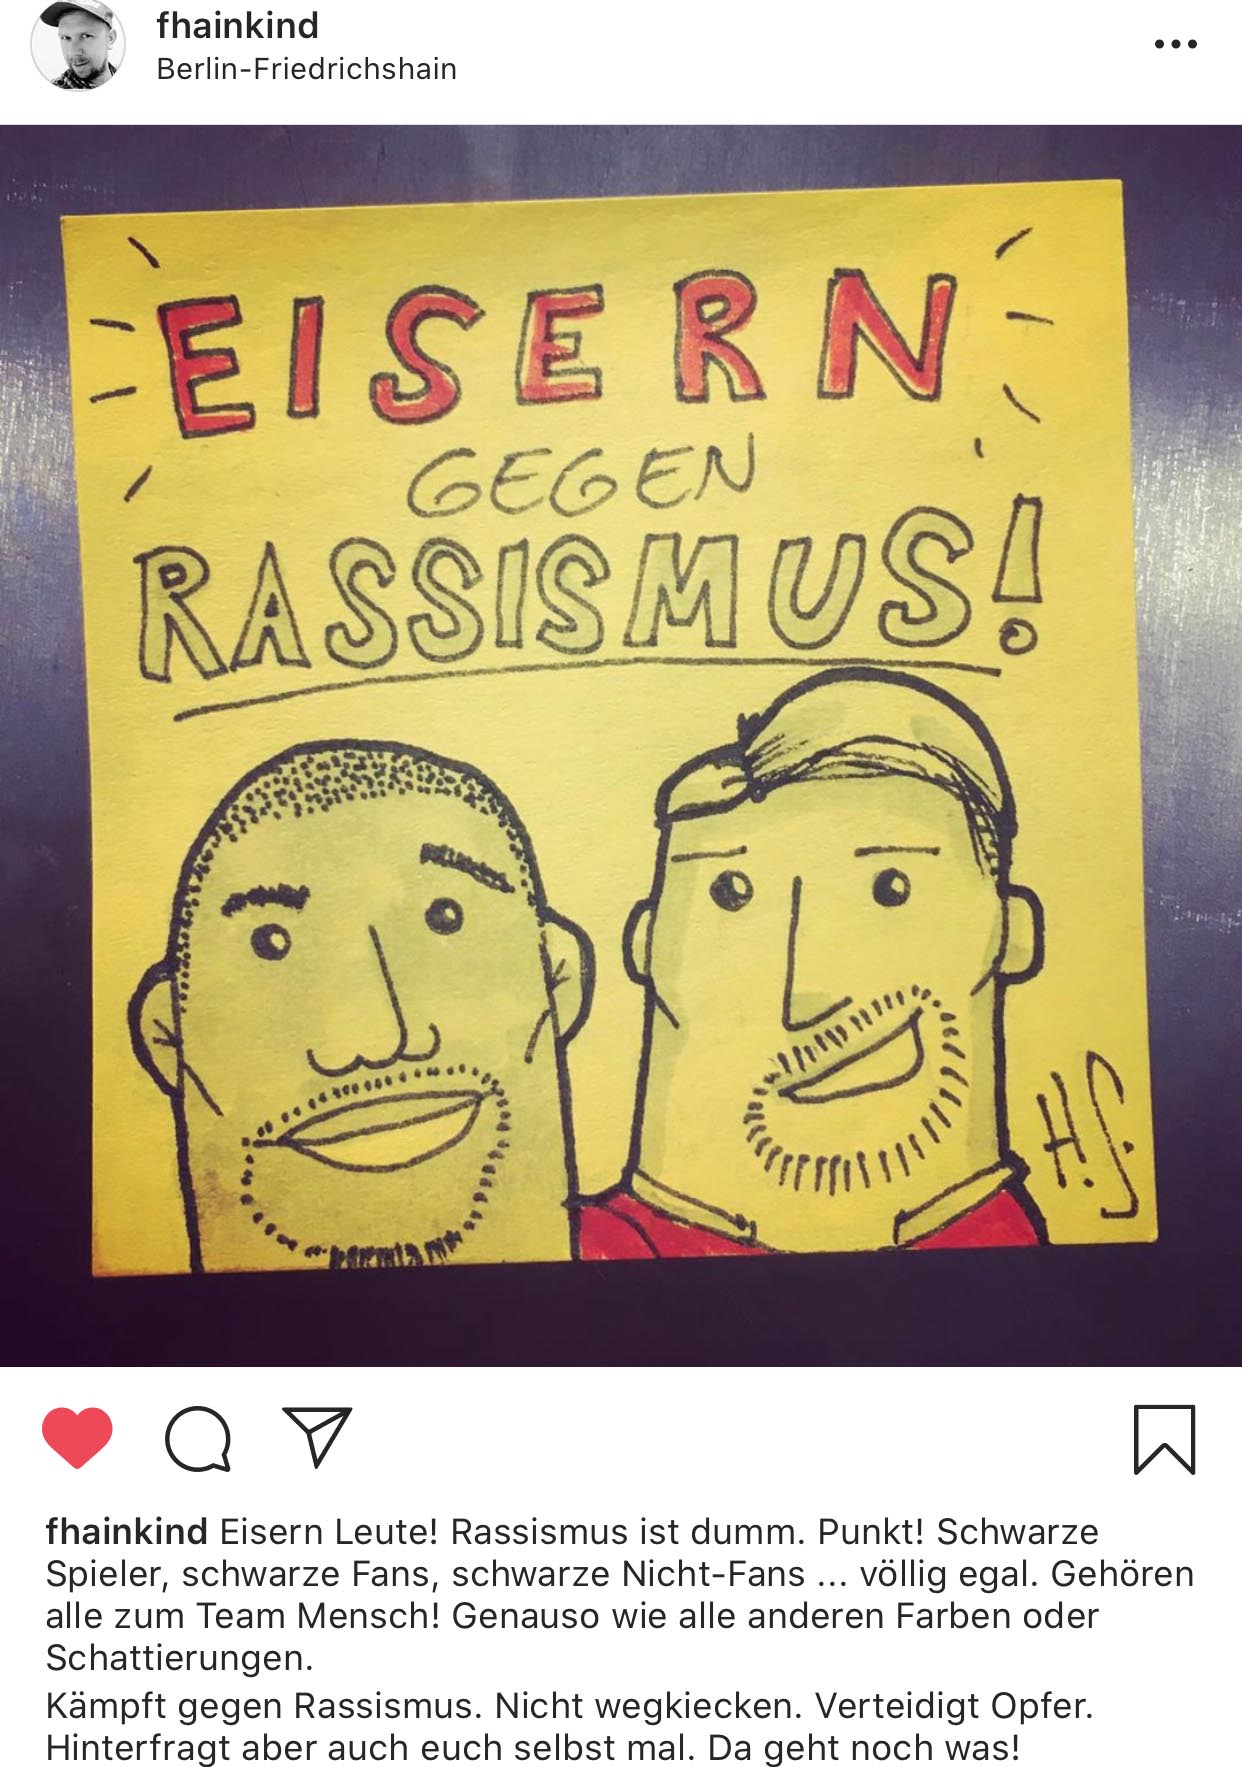 Bild "Eisern gegen Rassismus" aus der Postit-Challenge von @fhainkind auf Instagram